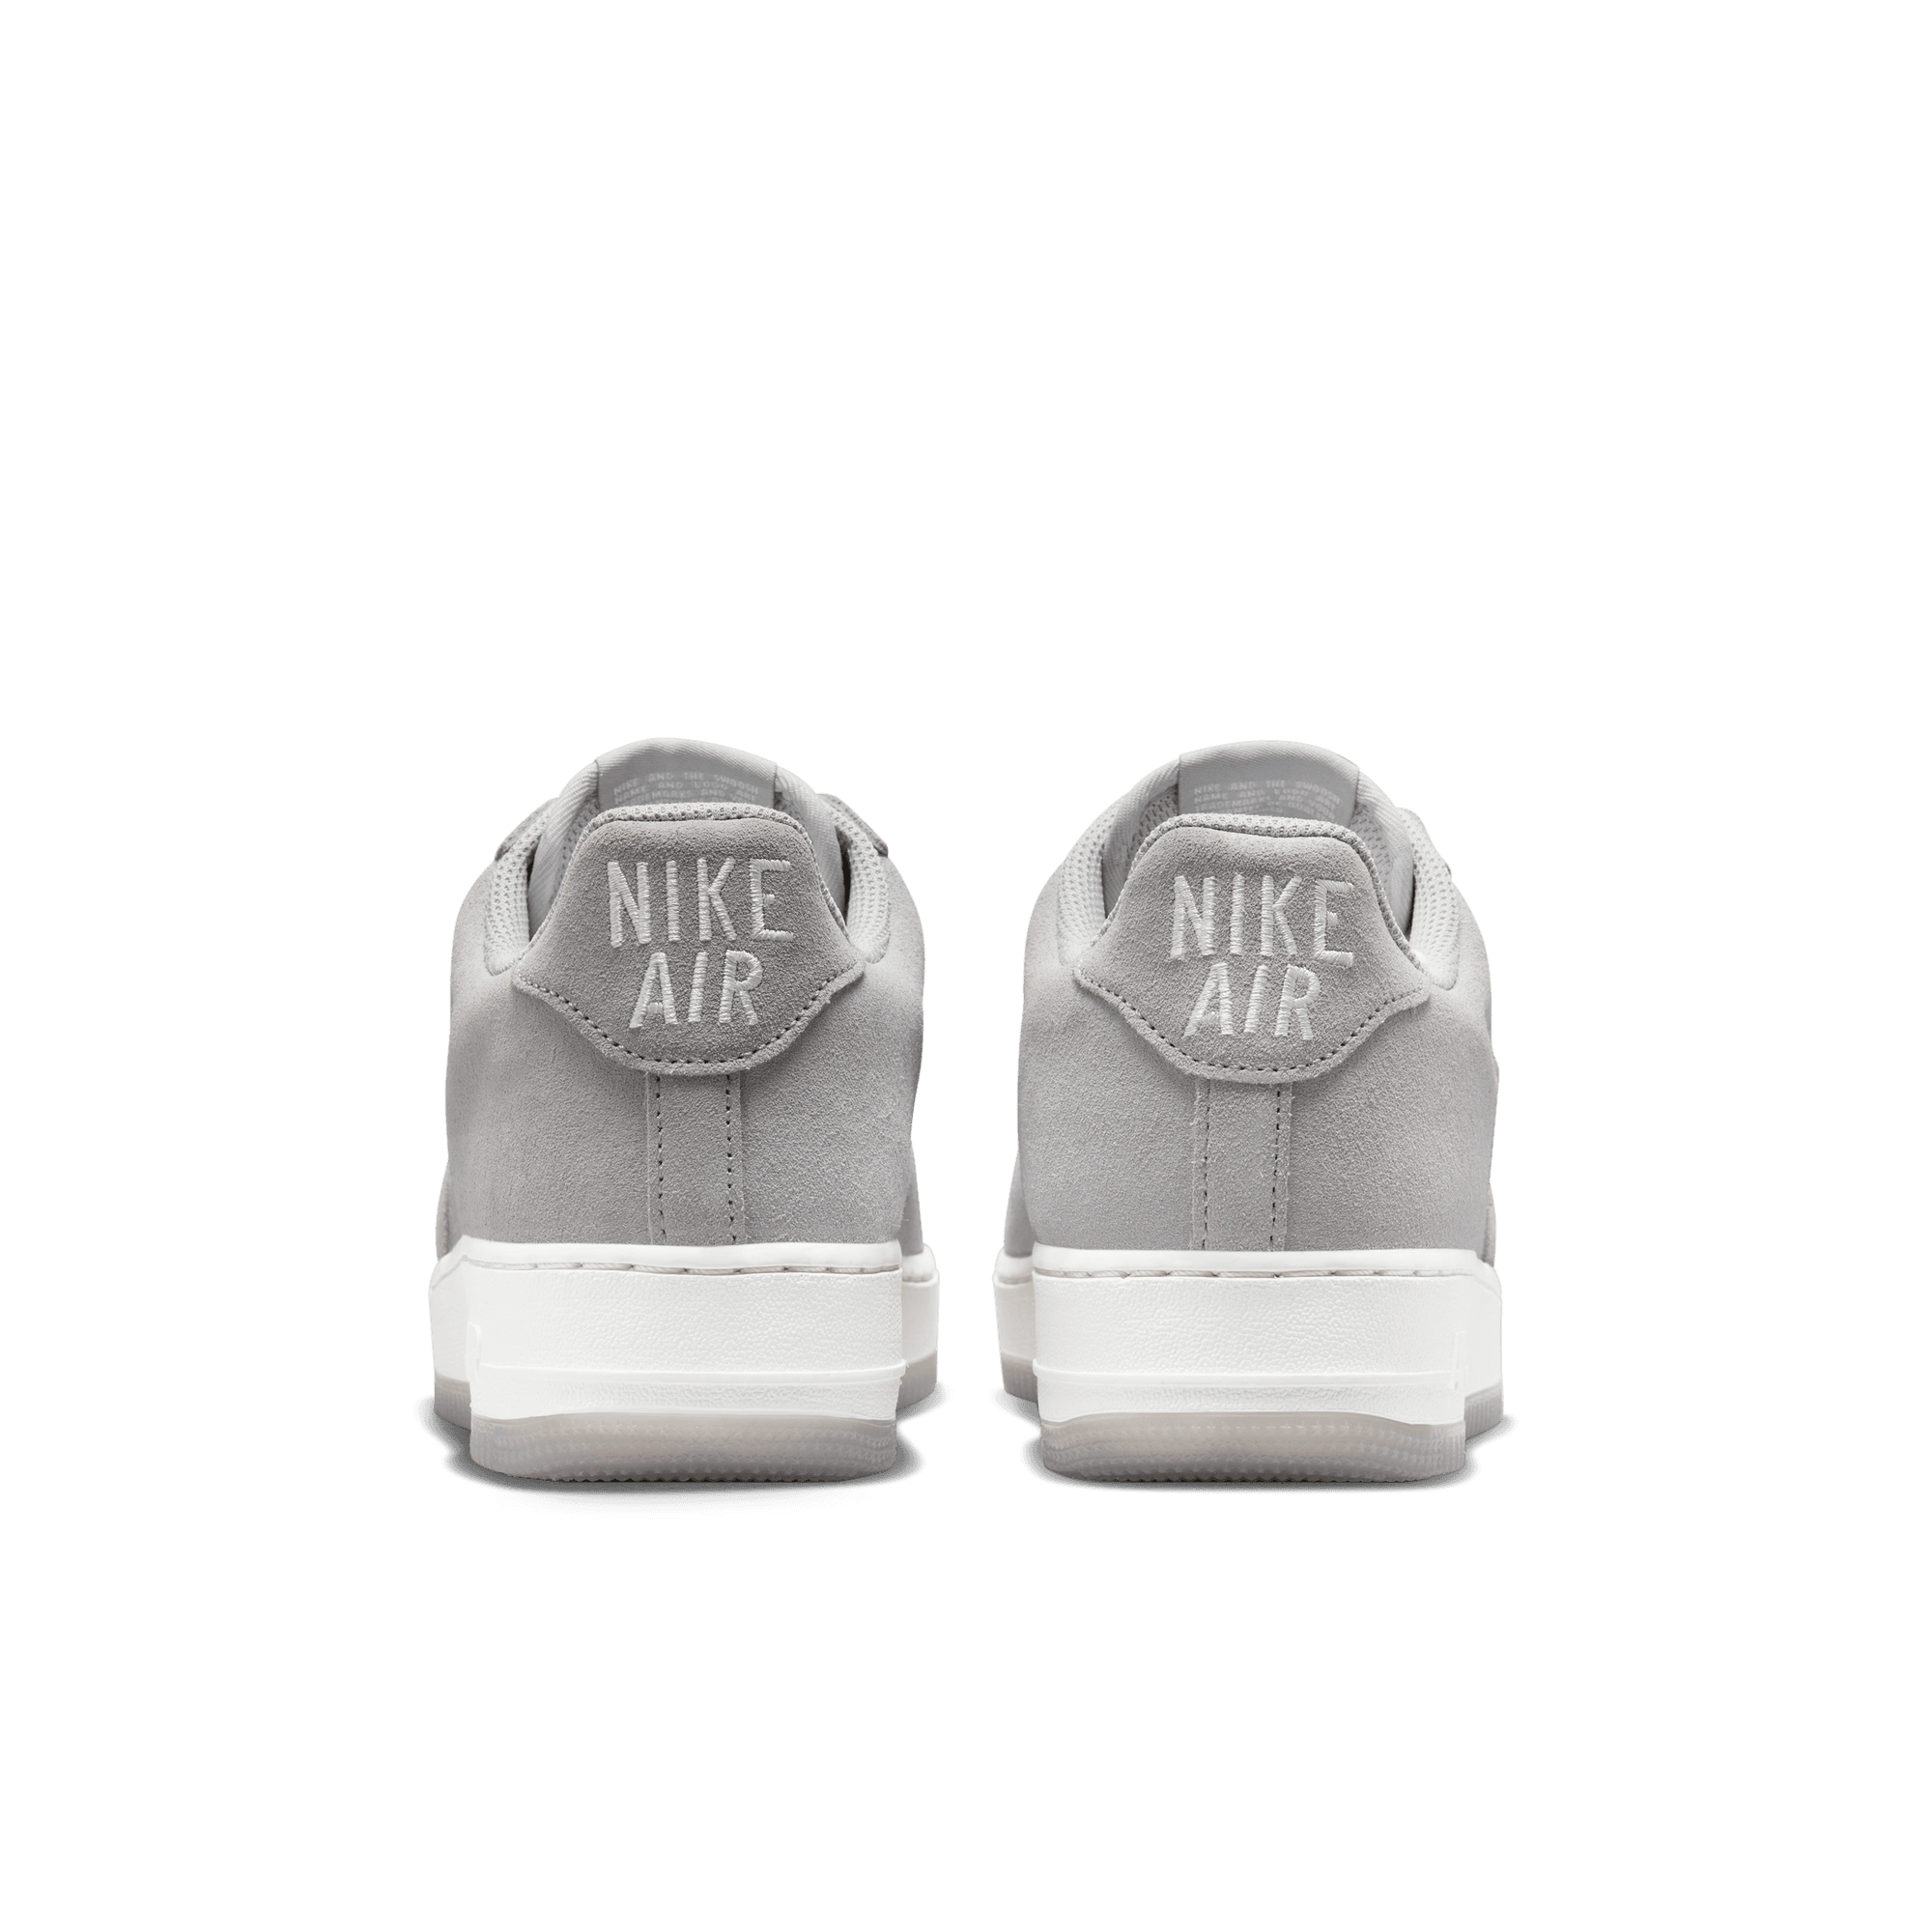 Premium Sneakers Store - NIKE AIR FORCE 1 LV 08 UTILITY